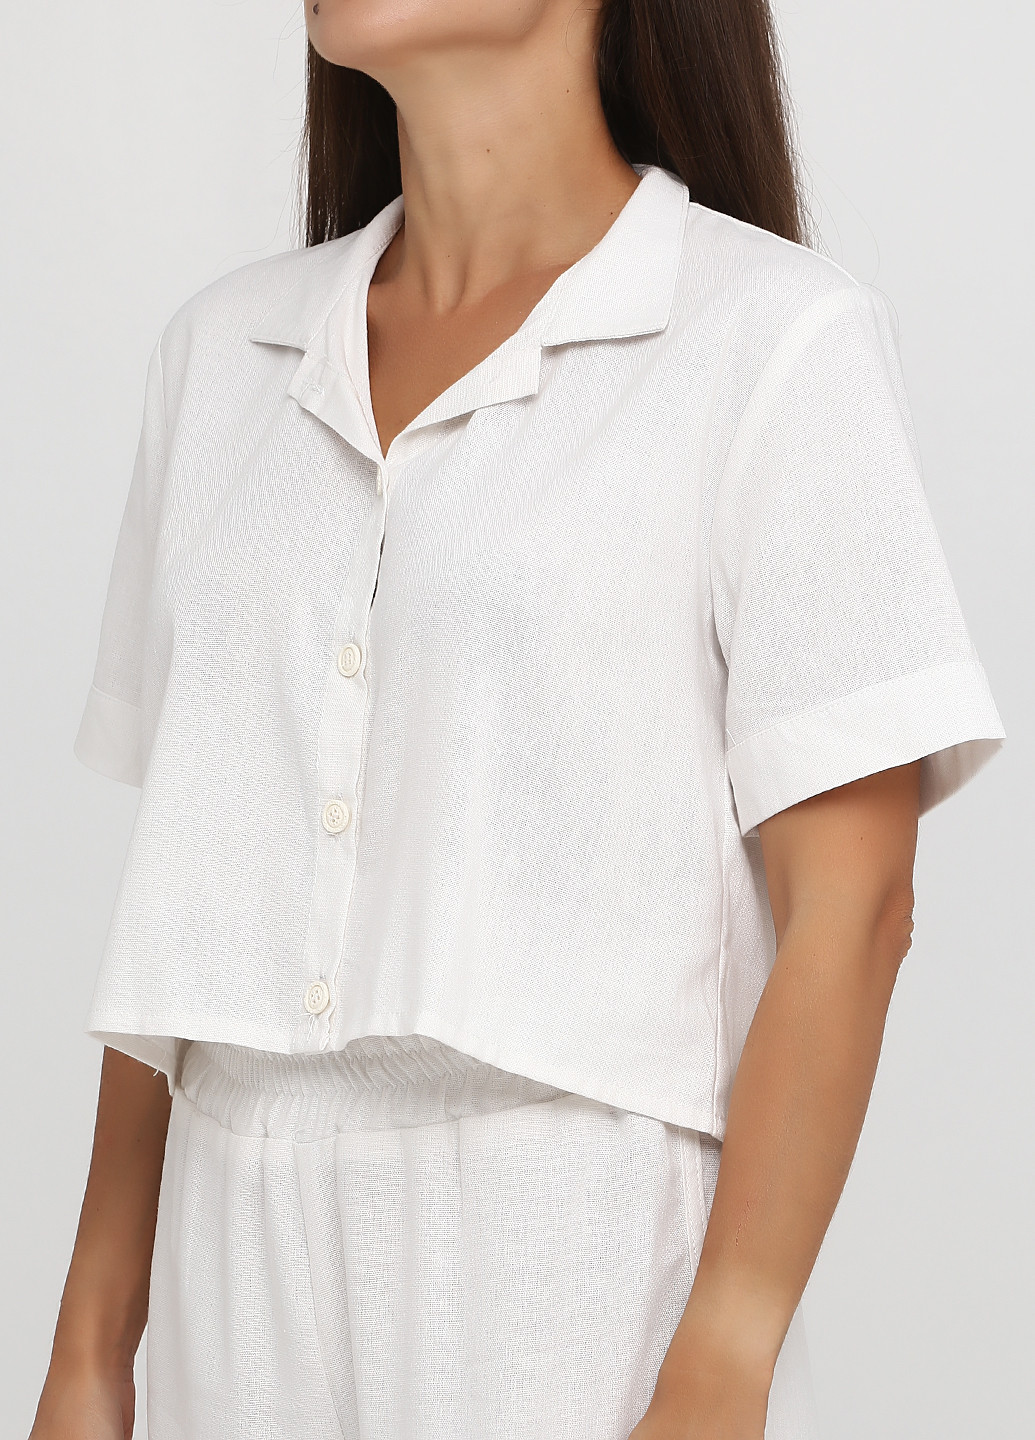 Костюм (блуза, шорты) Kristina Mamedova с шортами однотонный молочный кэжуал лен